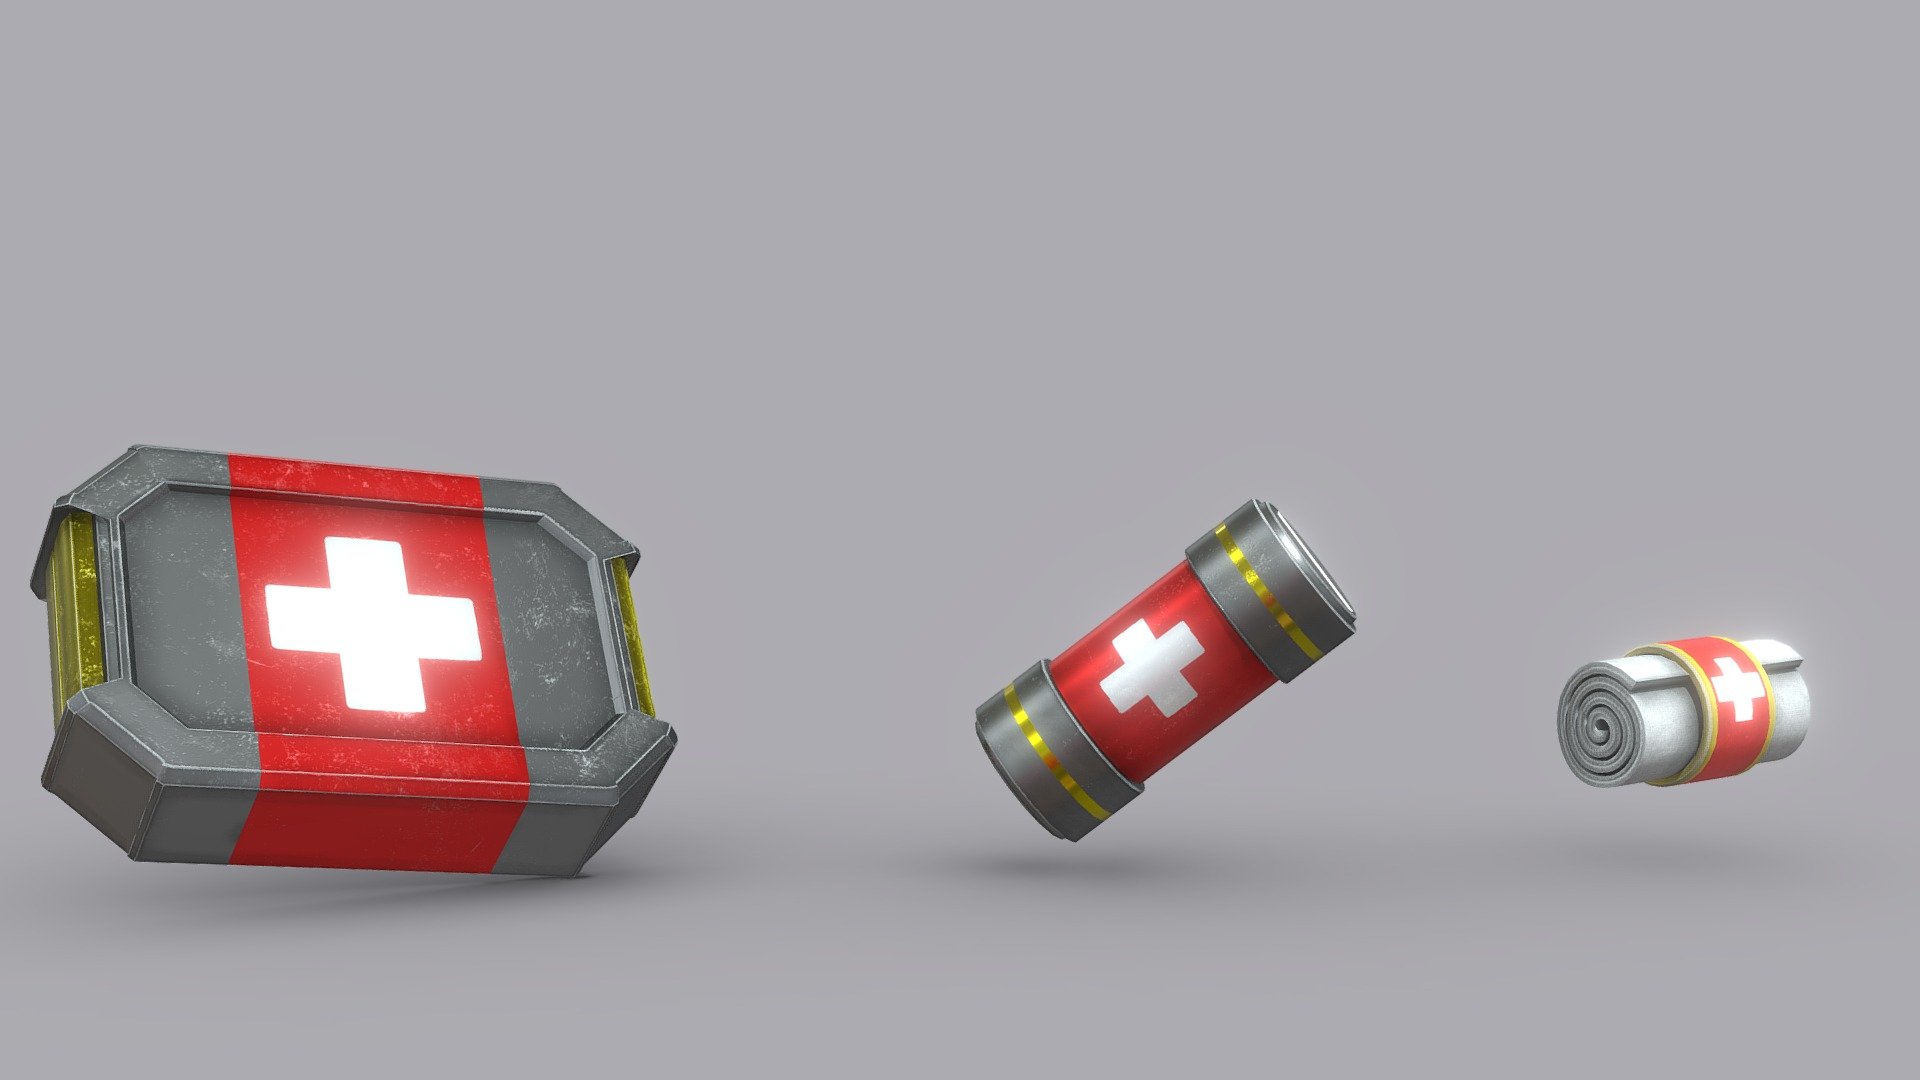 Pack of 3 medic kits - Health Packs - Buy Royalty Free 3D model by Mora (@MoraAzul) 3d model